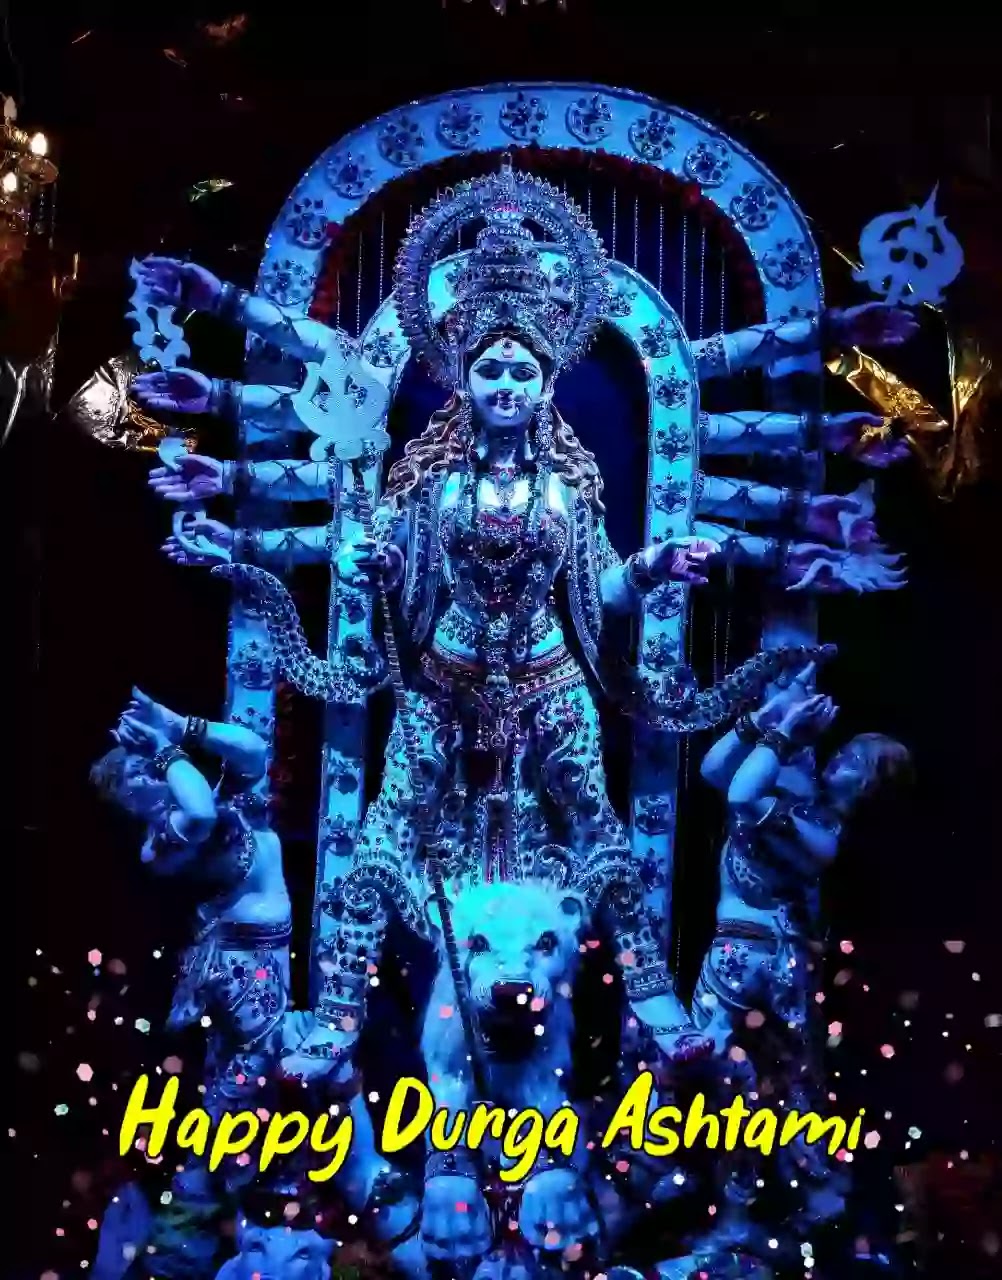 Durga Ashtami images